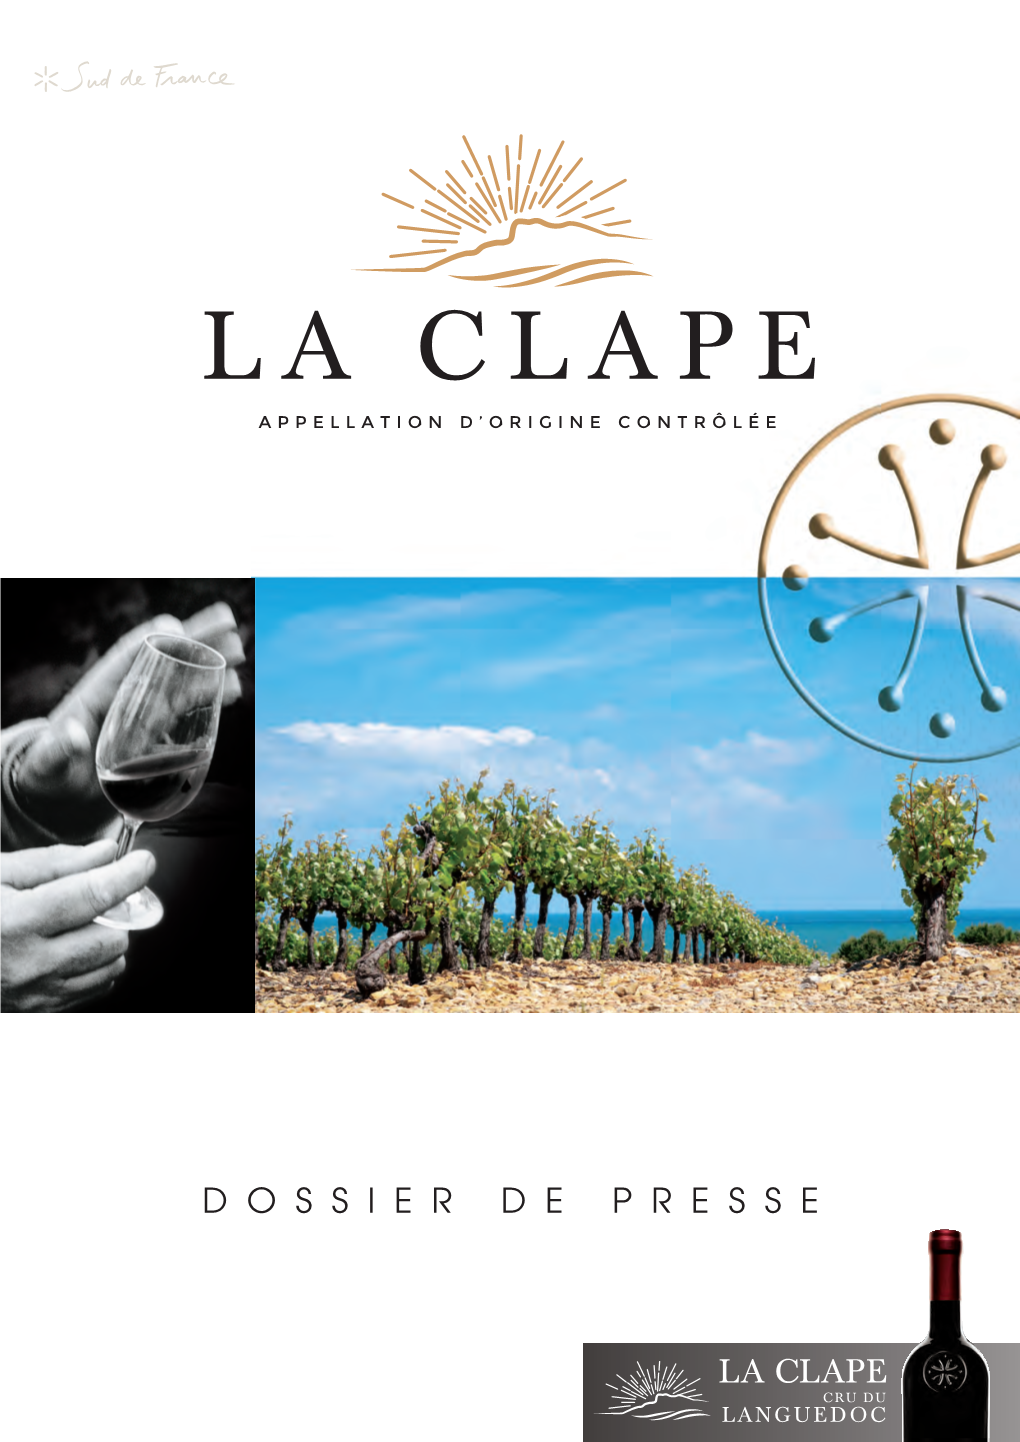 La Clape Cru Du Languedoc L a Clape Île De Grands Vins